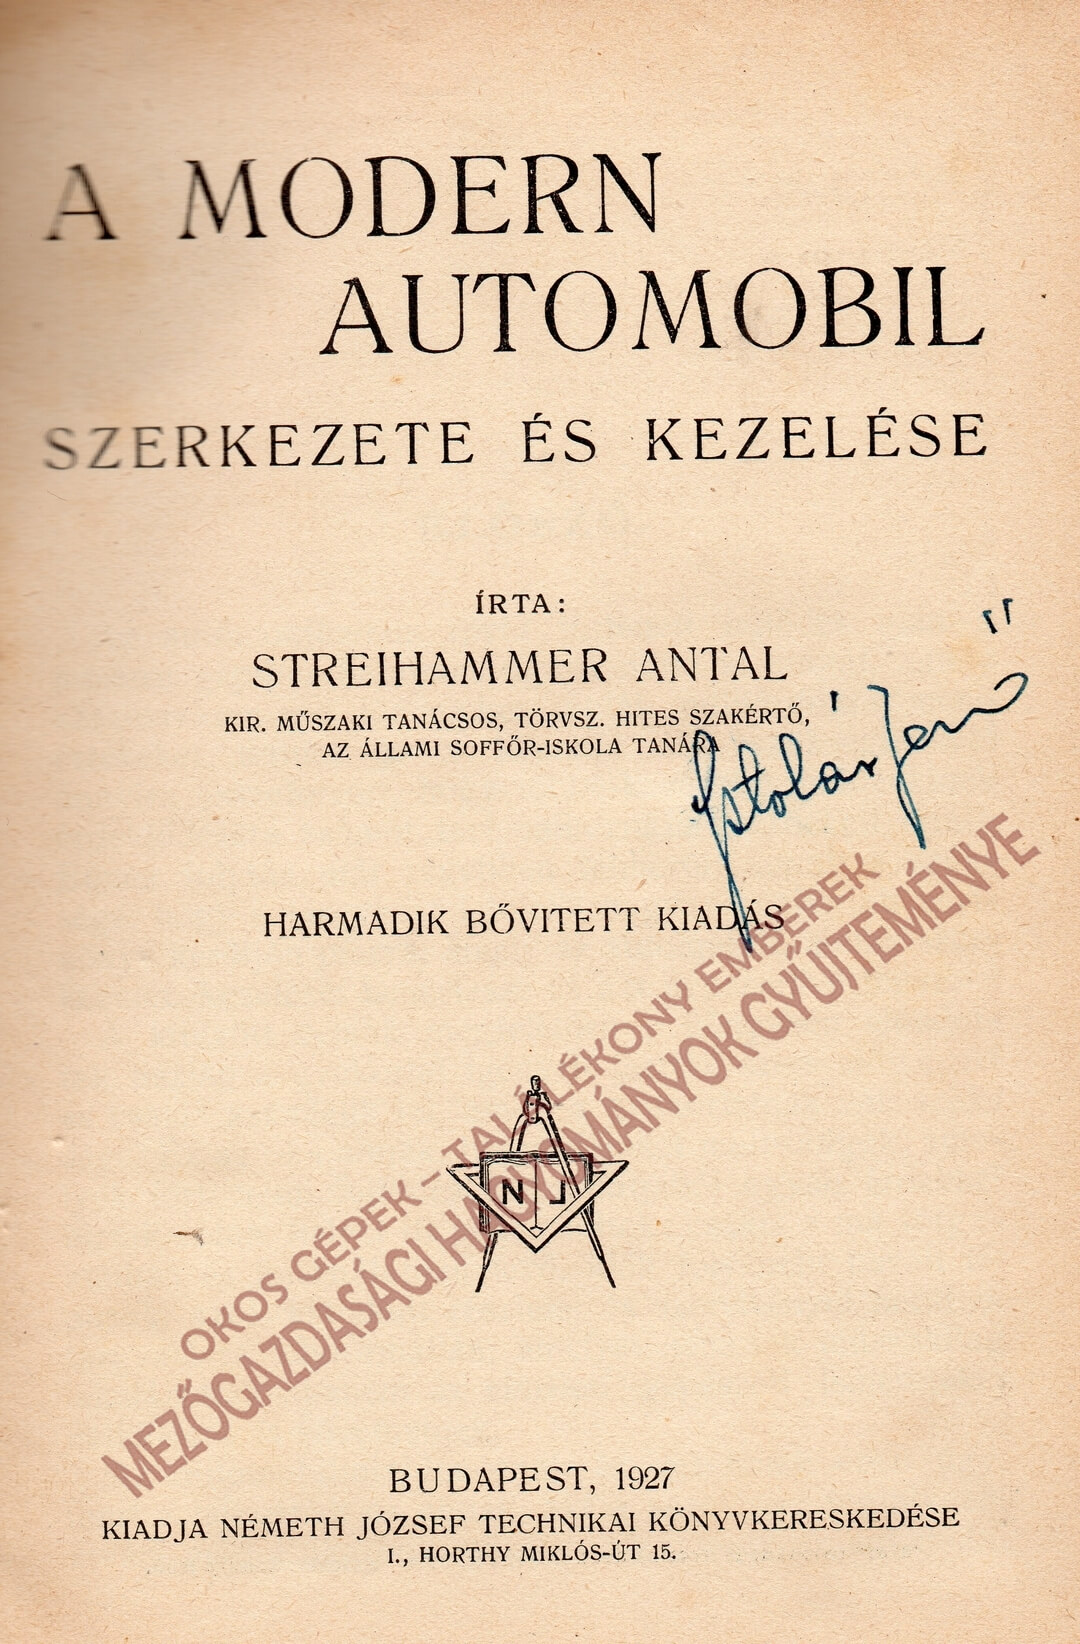 A modern automobil szerkezete és kezelése könyv